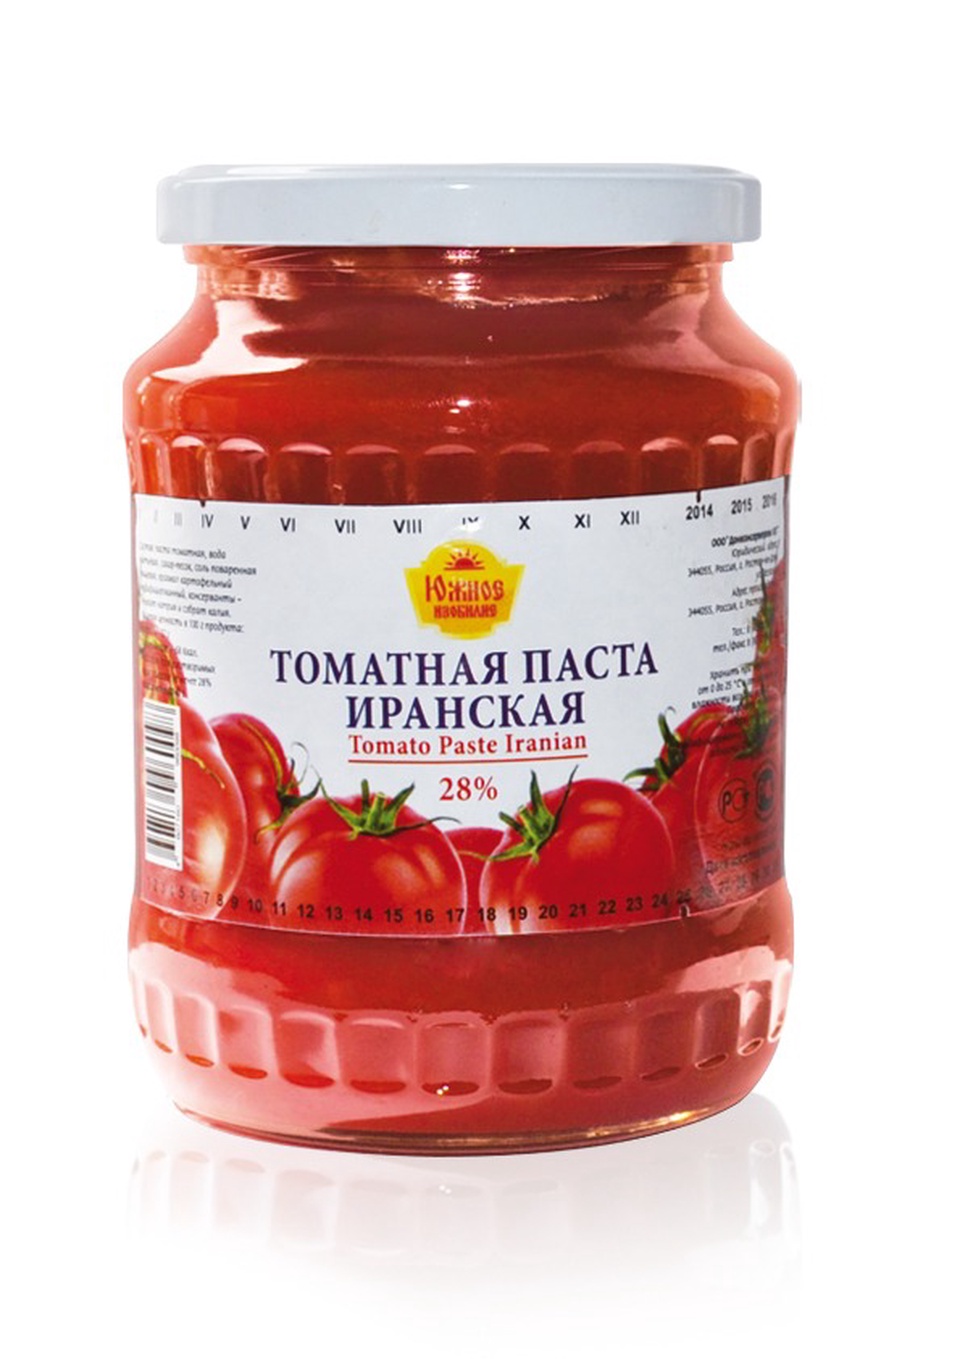 Паста томатная Иранская 1000г стекло - 149 ₽, заказать онлайн.